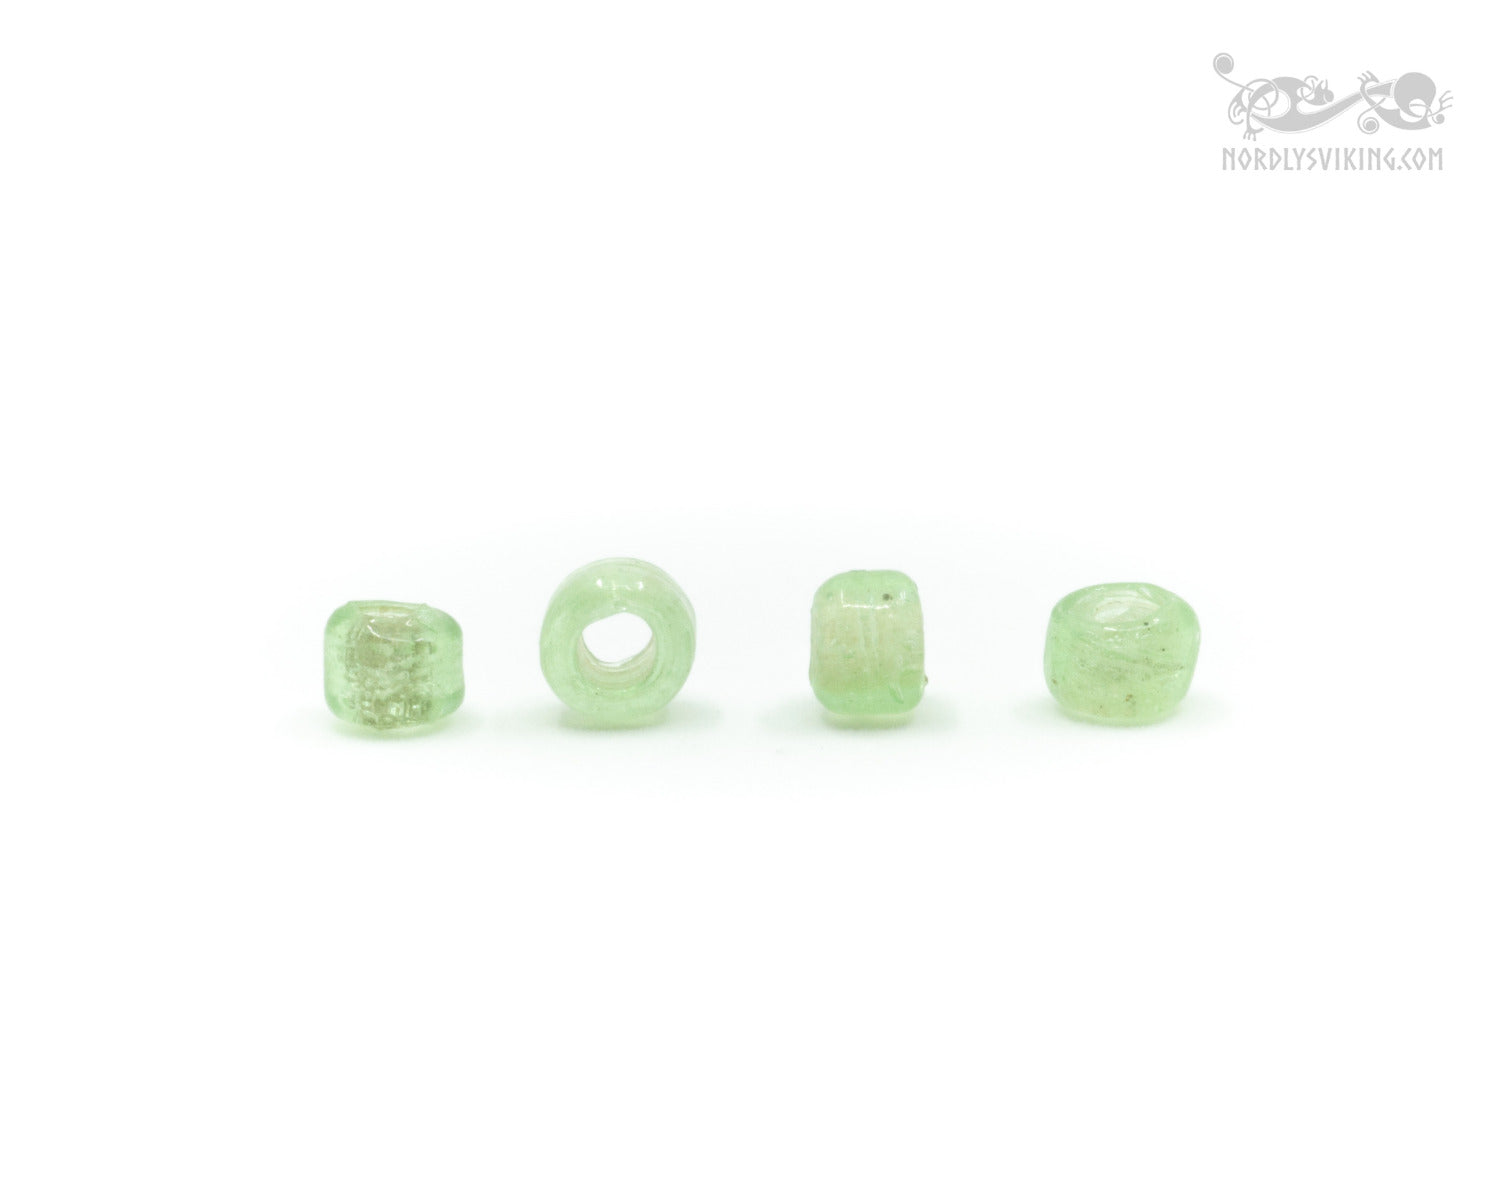 Light green glass bead